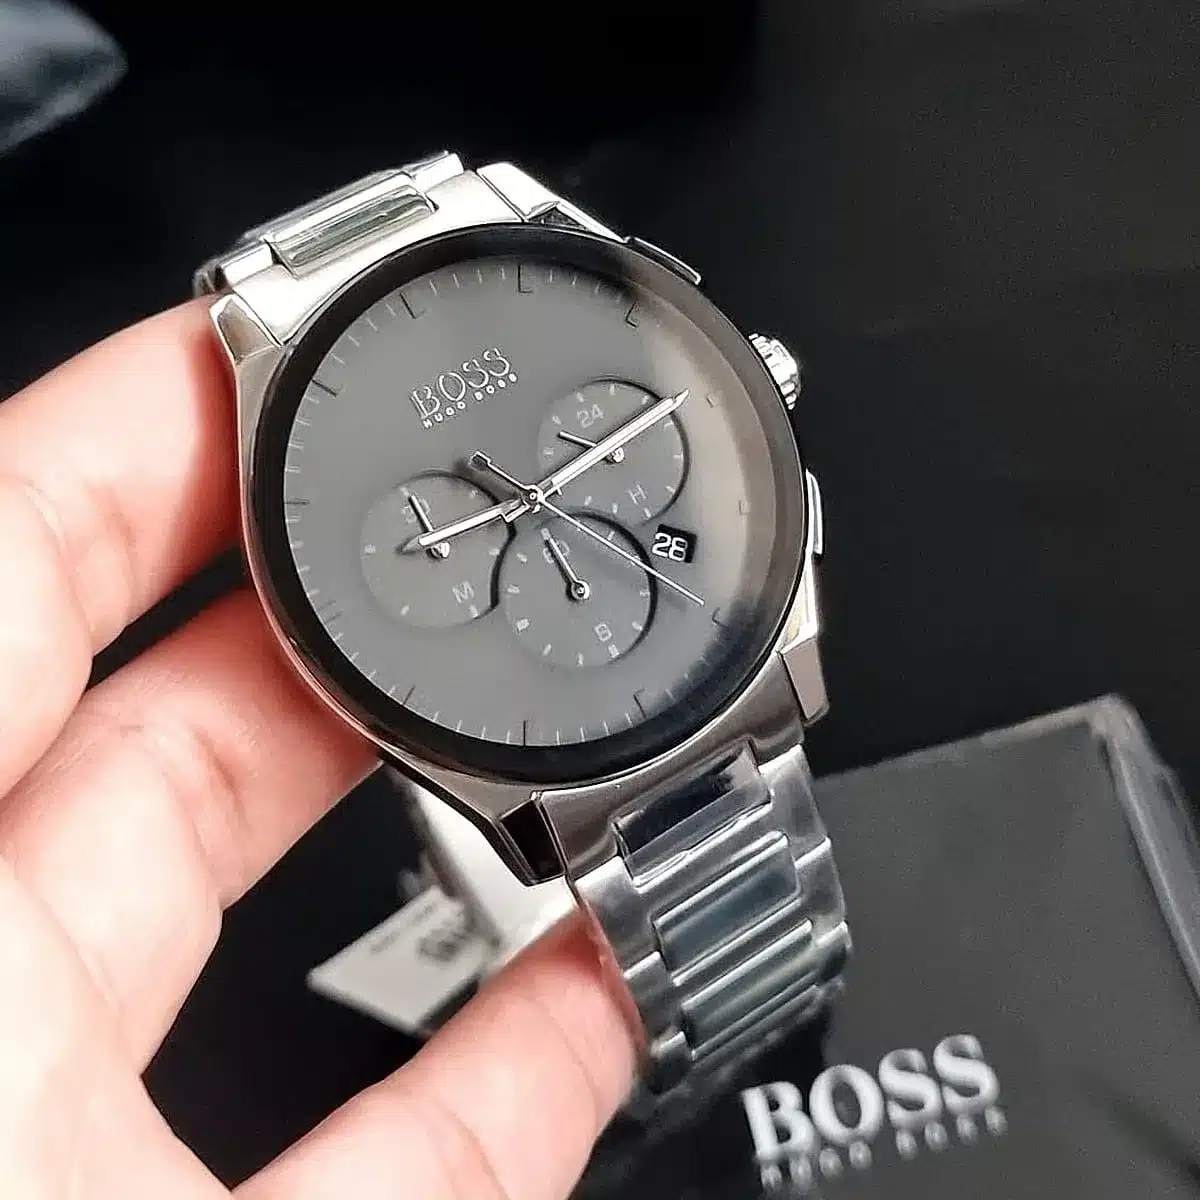 Hugo Boss Men's Watch Peak 1513762 | Watches Prime